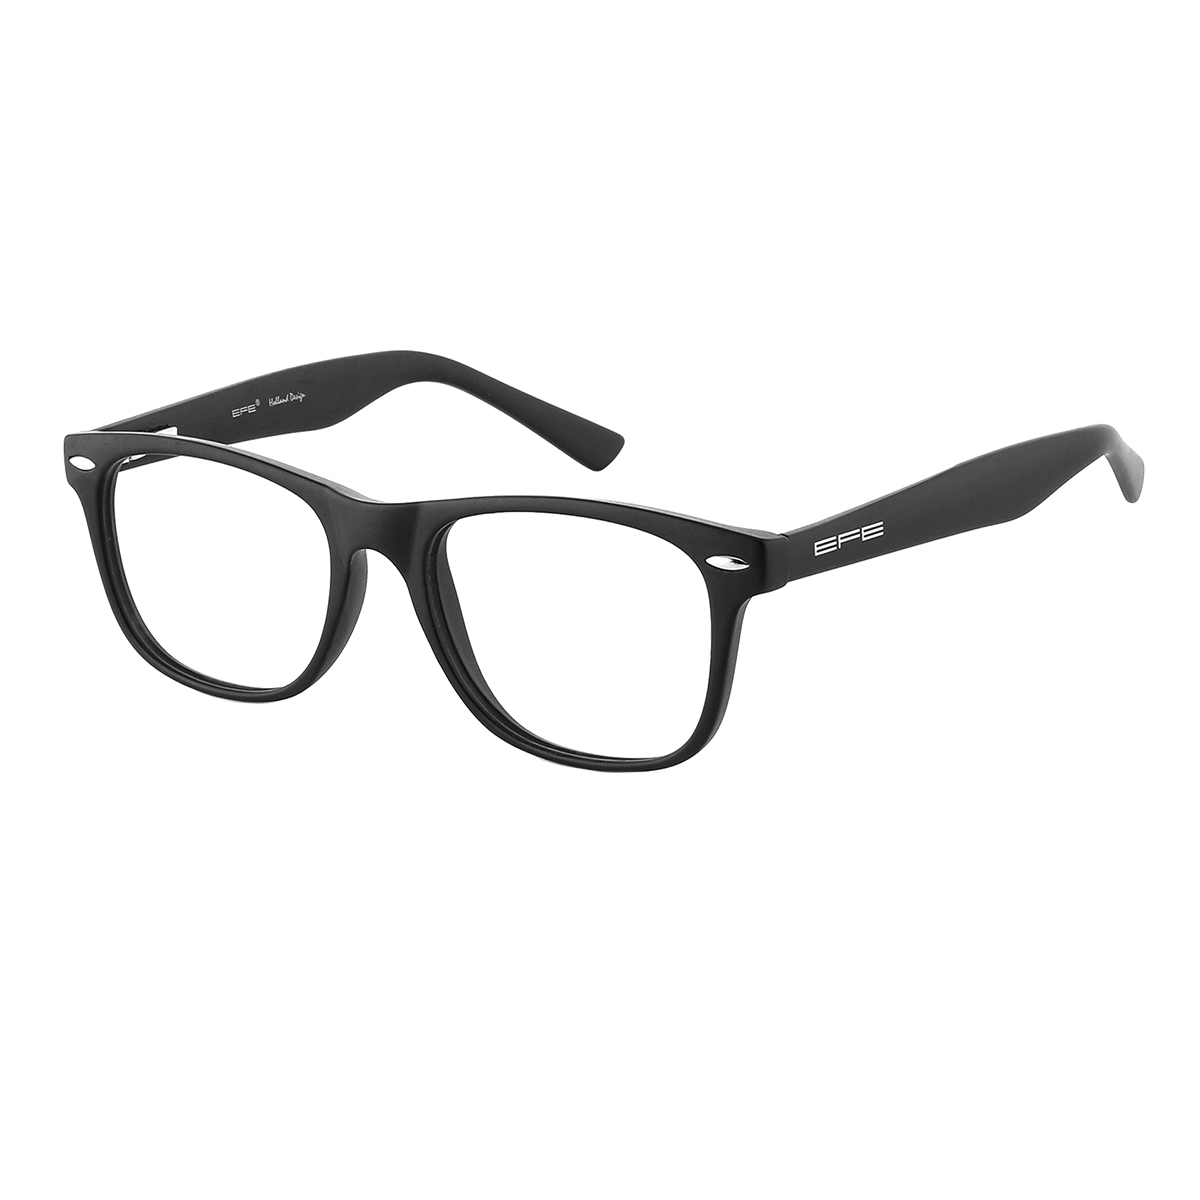 Sakae - Square Black Reading Glasses for Men & Women